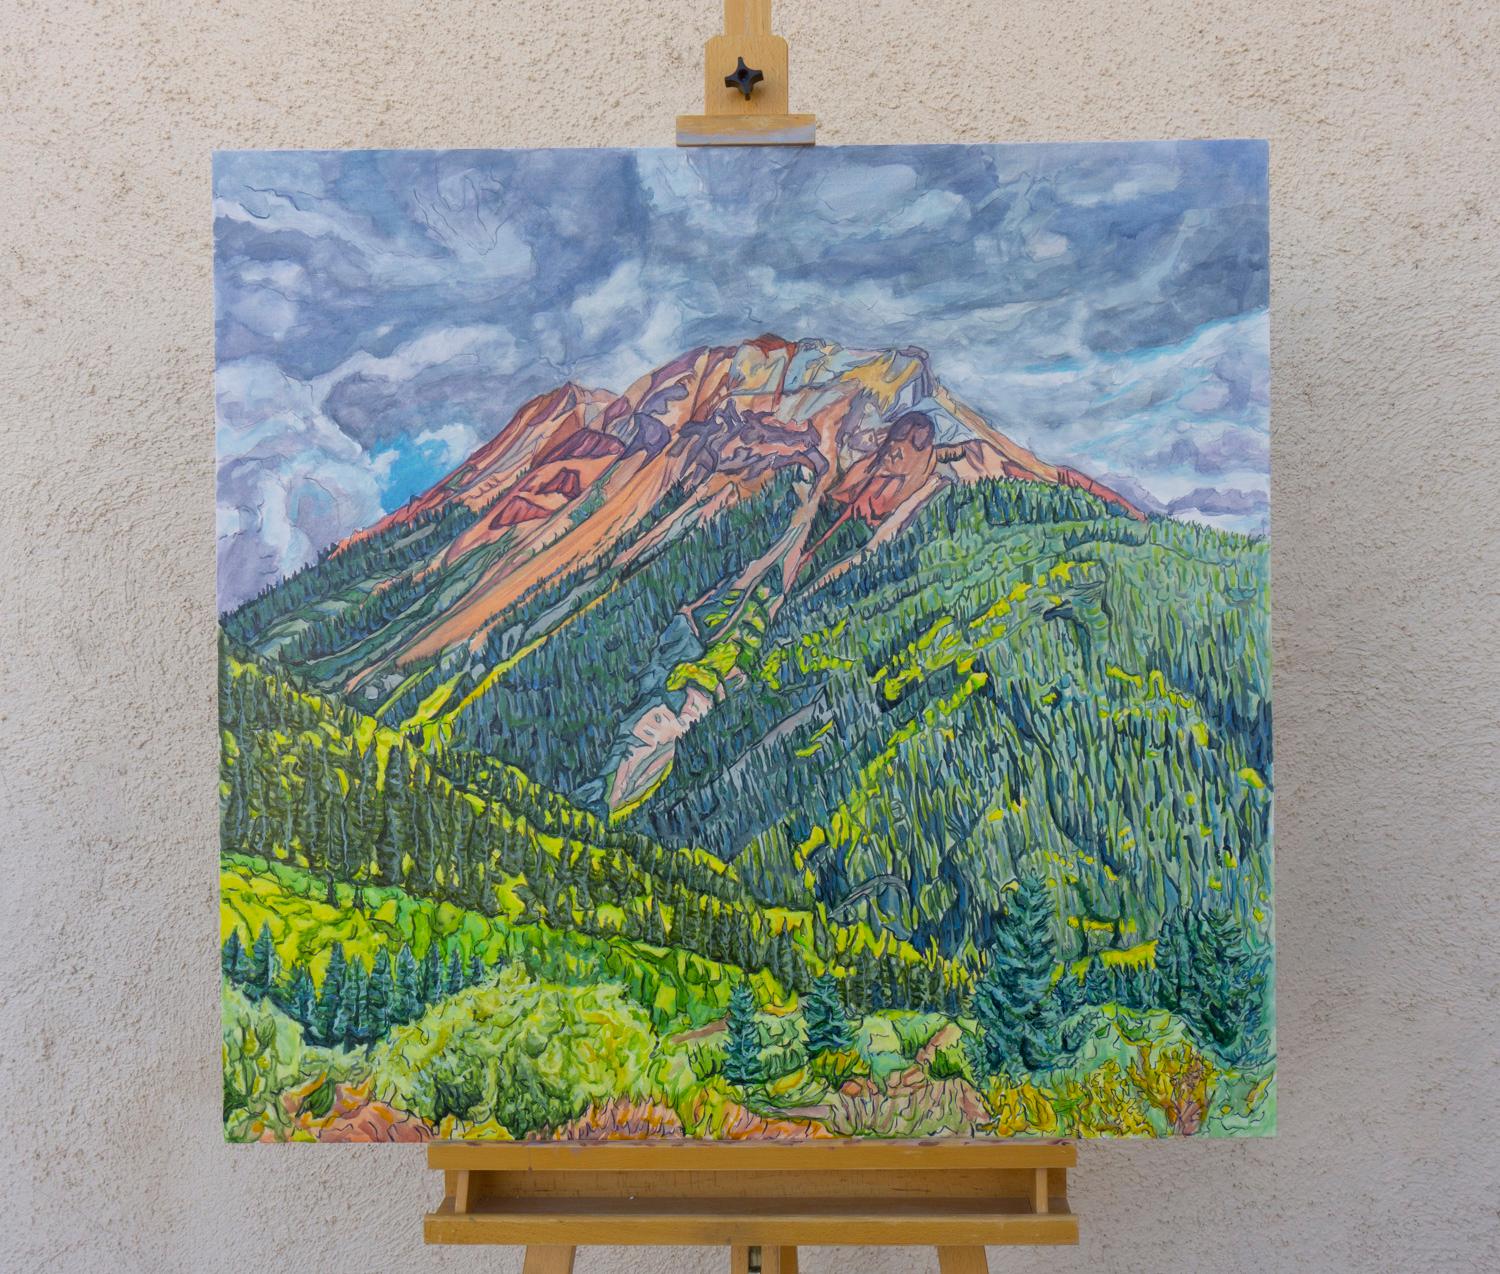 <p>Commentaires de l'artiste<br>Une vue fascinante du col de Red Mountain à l'automne, avec de riches teintes de vert et de jaune. Les nuages sombres et changeants et les trembles qui tournent ajoutent une touche dramatique aux sommets rouges